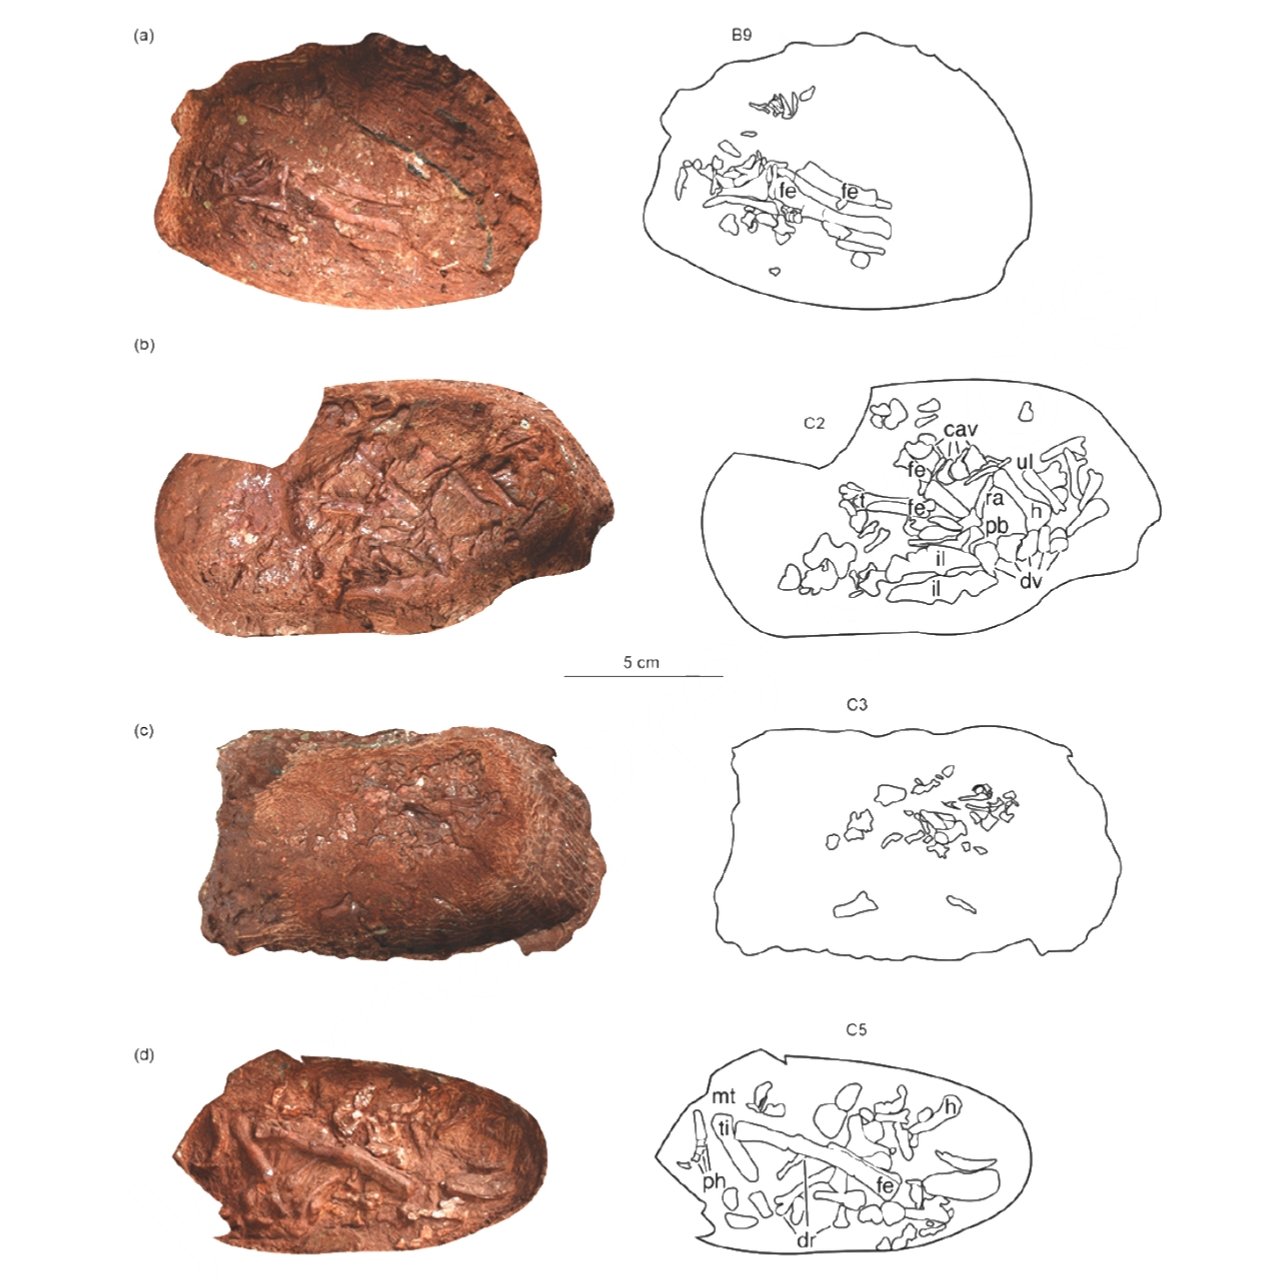 เอ็มบริโอไดโนเสาร์ที่เก็บรักษาไว้อย่างไม่น่าเชื่อที่พบในไข่ฟอสซิล 5